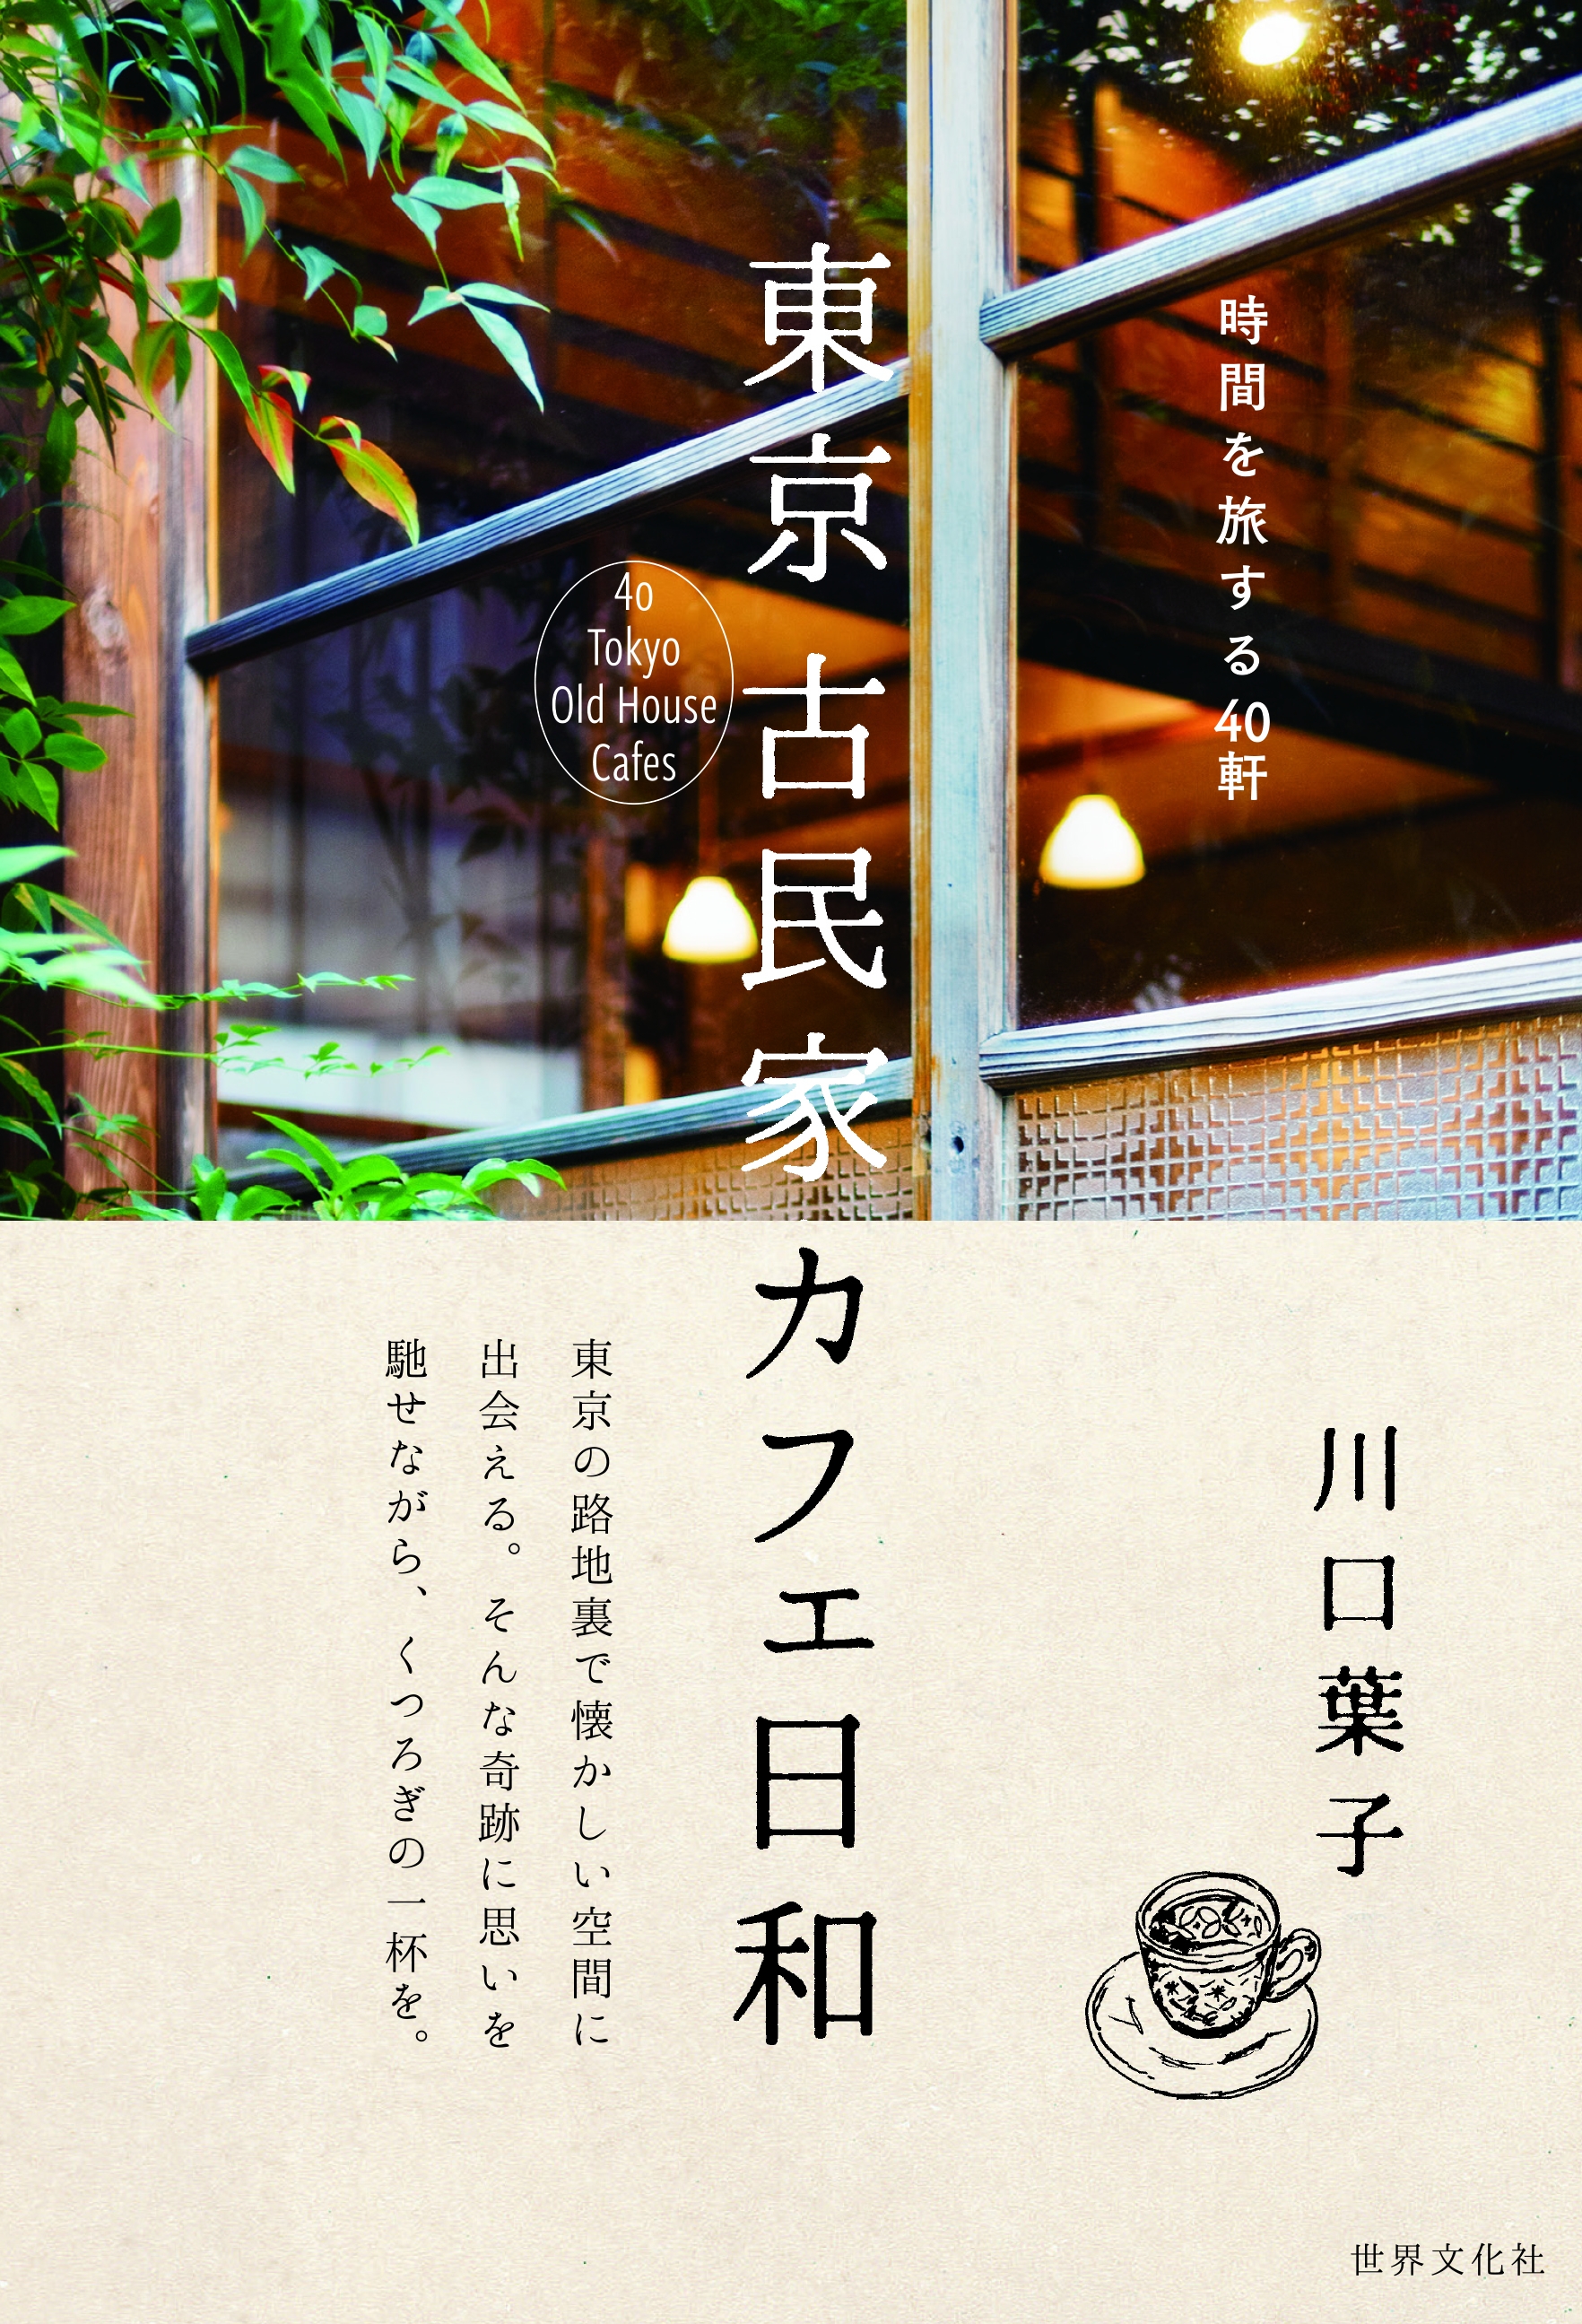 今 行ってみたい東京の 古民家カフェ 40軒を紹介するカフェ本が発売 株式会社世界文化ホールディングスのプレスリリース